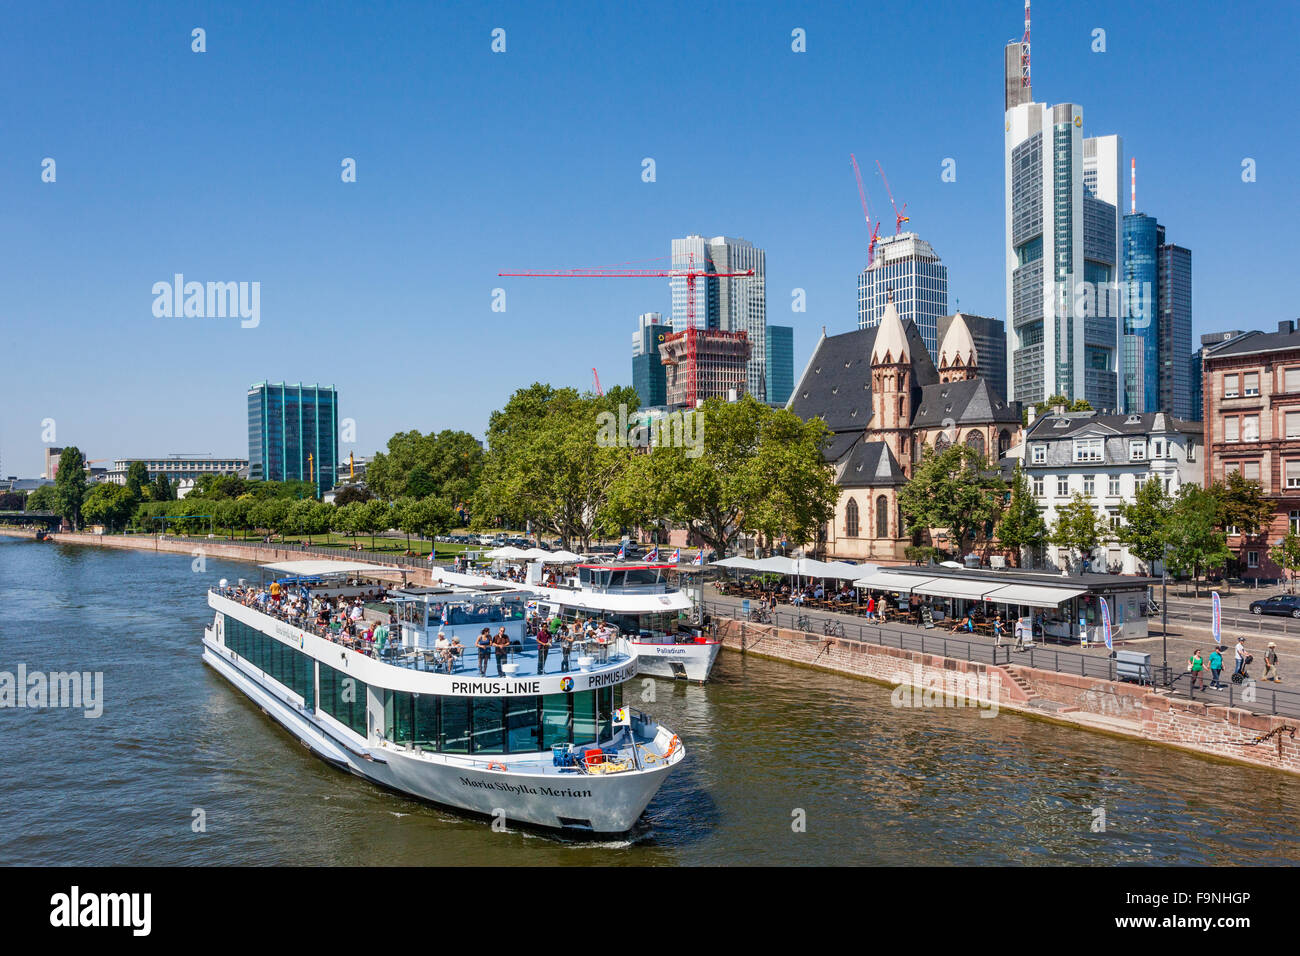 Deutschland, Hessen, Frankfurt Am Main, Primus-Linie Flusskreuzfahrtschiff "Maria Sibylla Merian" ausgehend von den Ufern des Flusses Mainkai Stockfoto